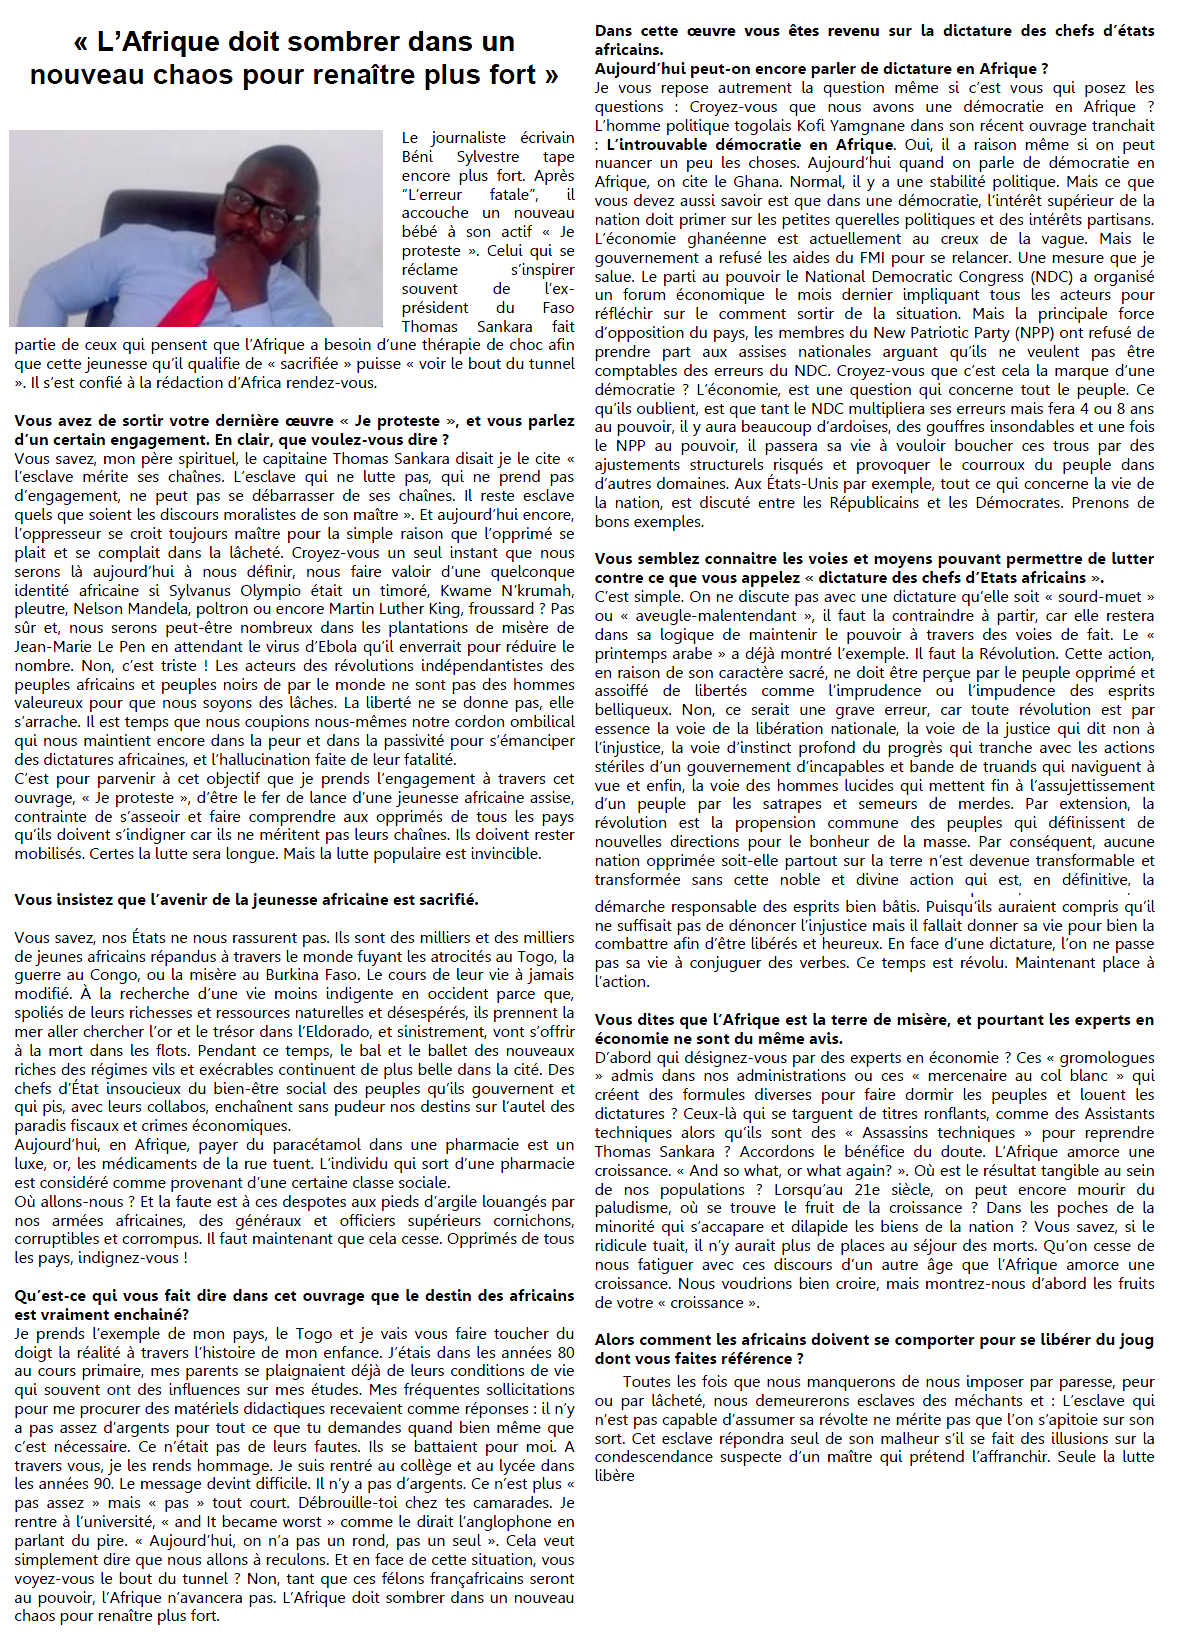 Article_AFRICARDV.COM_Béni Sylvestre_Edilivre